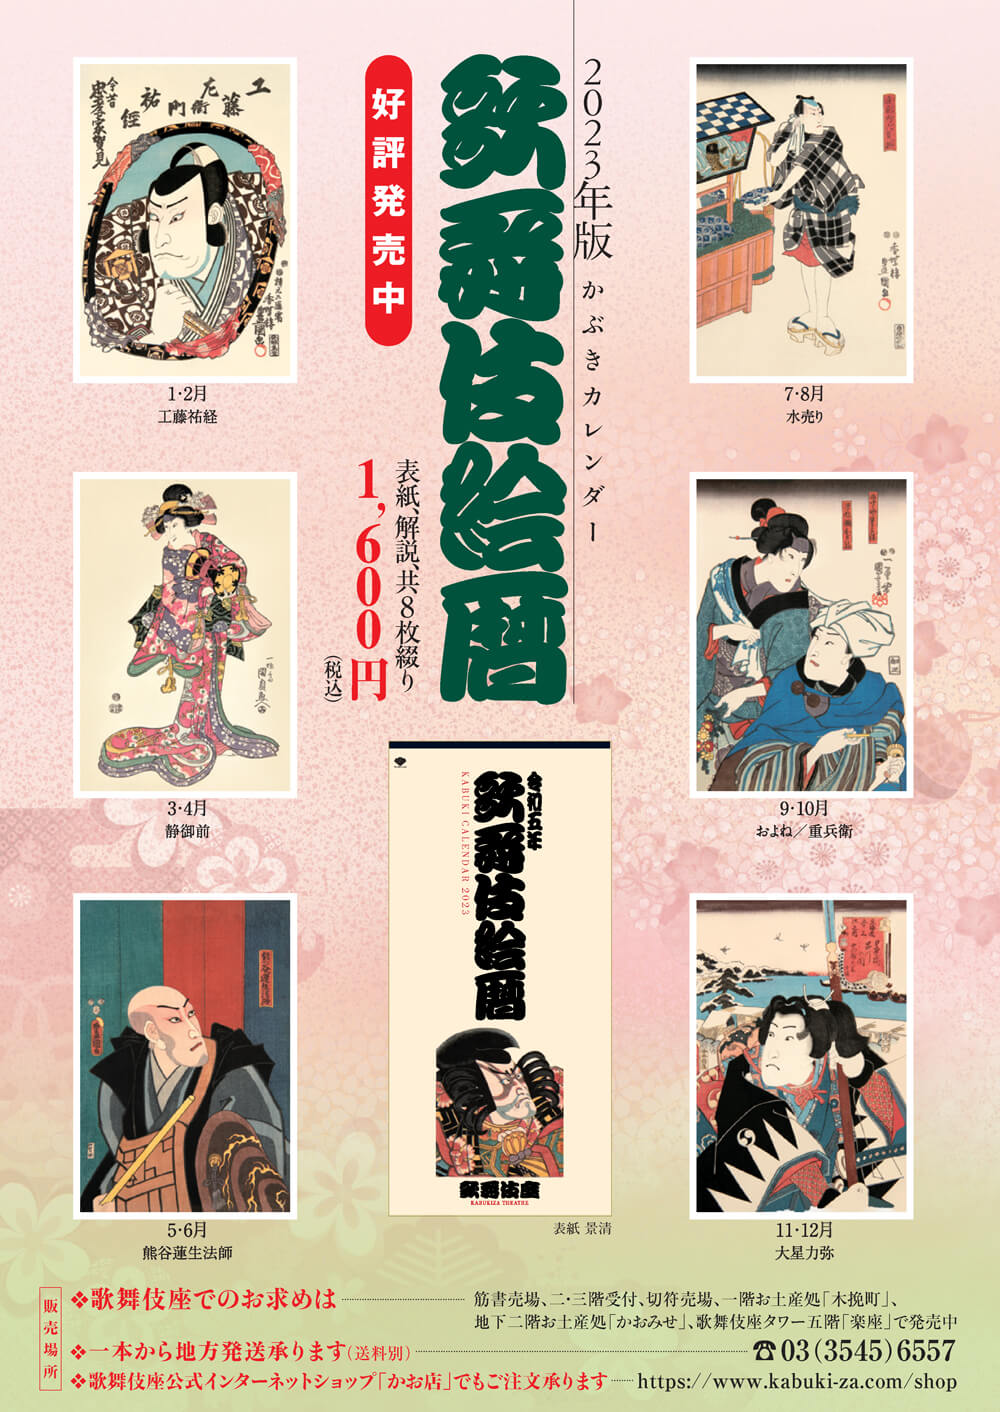 2023年版かぶきカレンダー「歌舞伎絵暦」